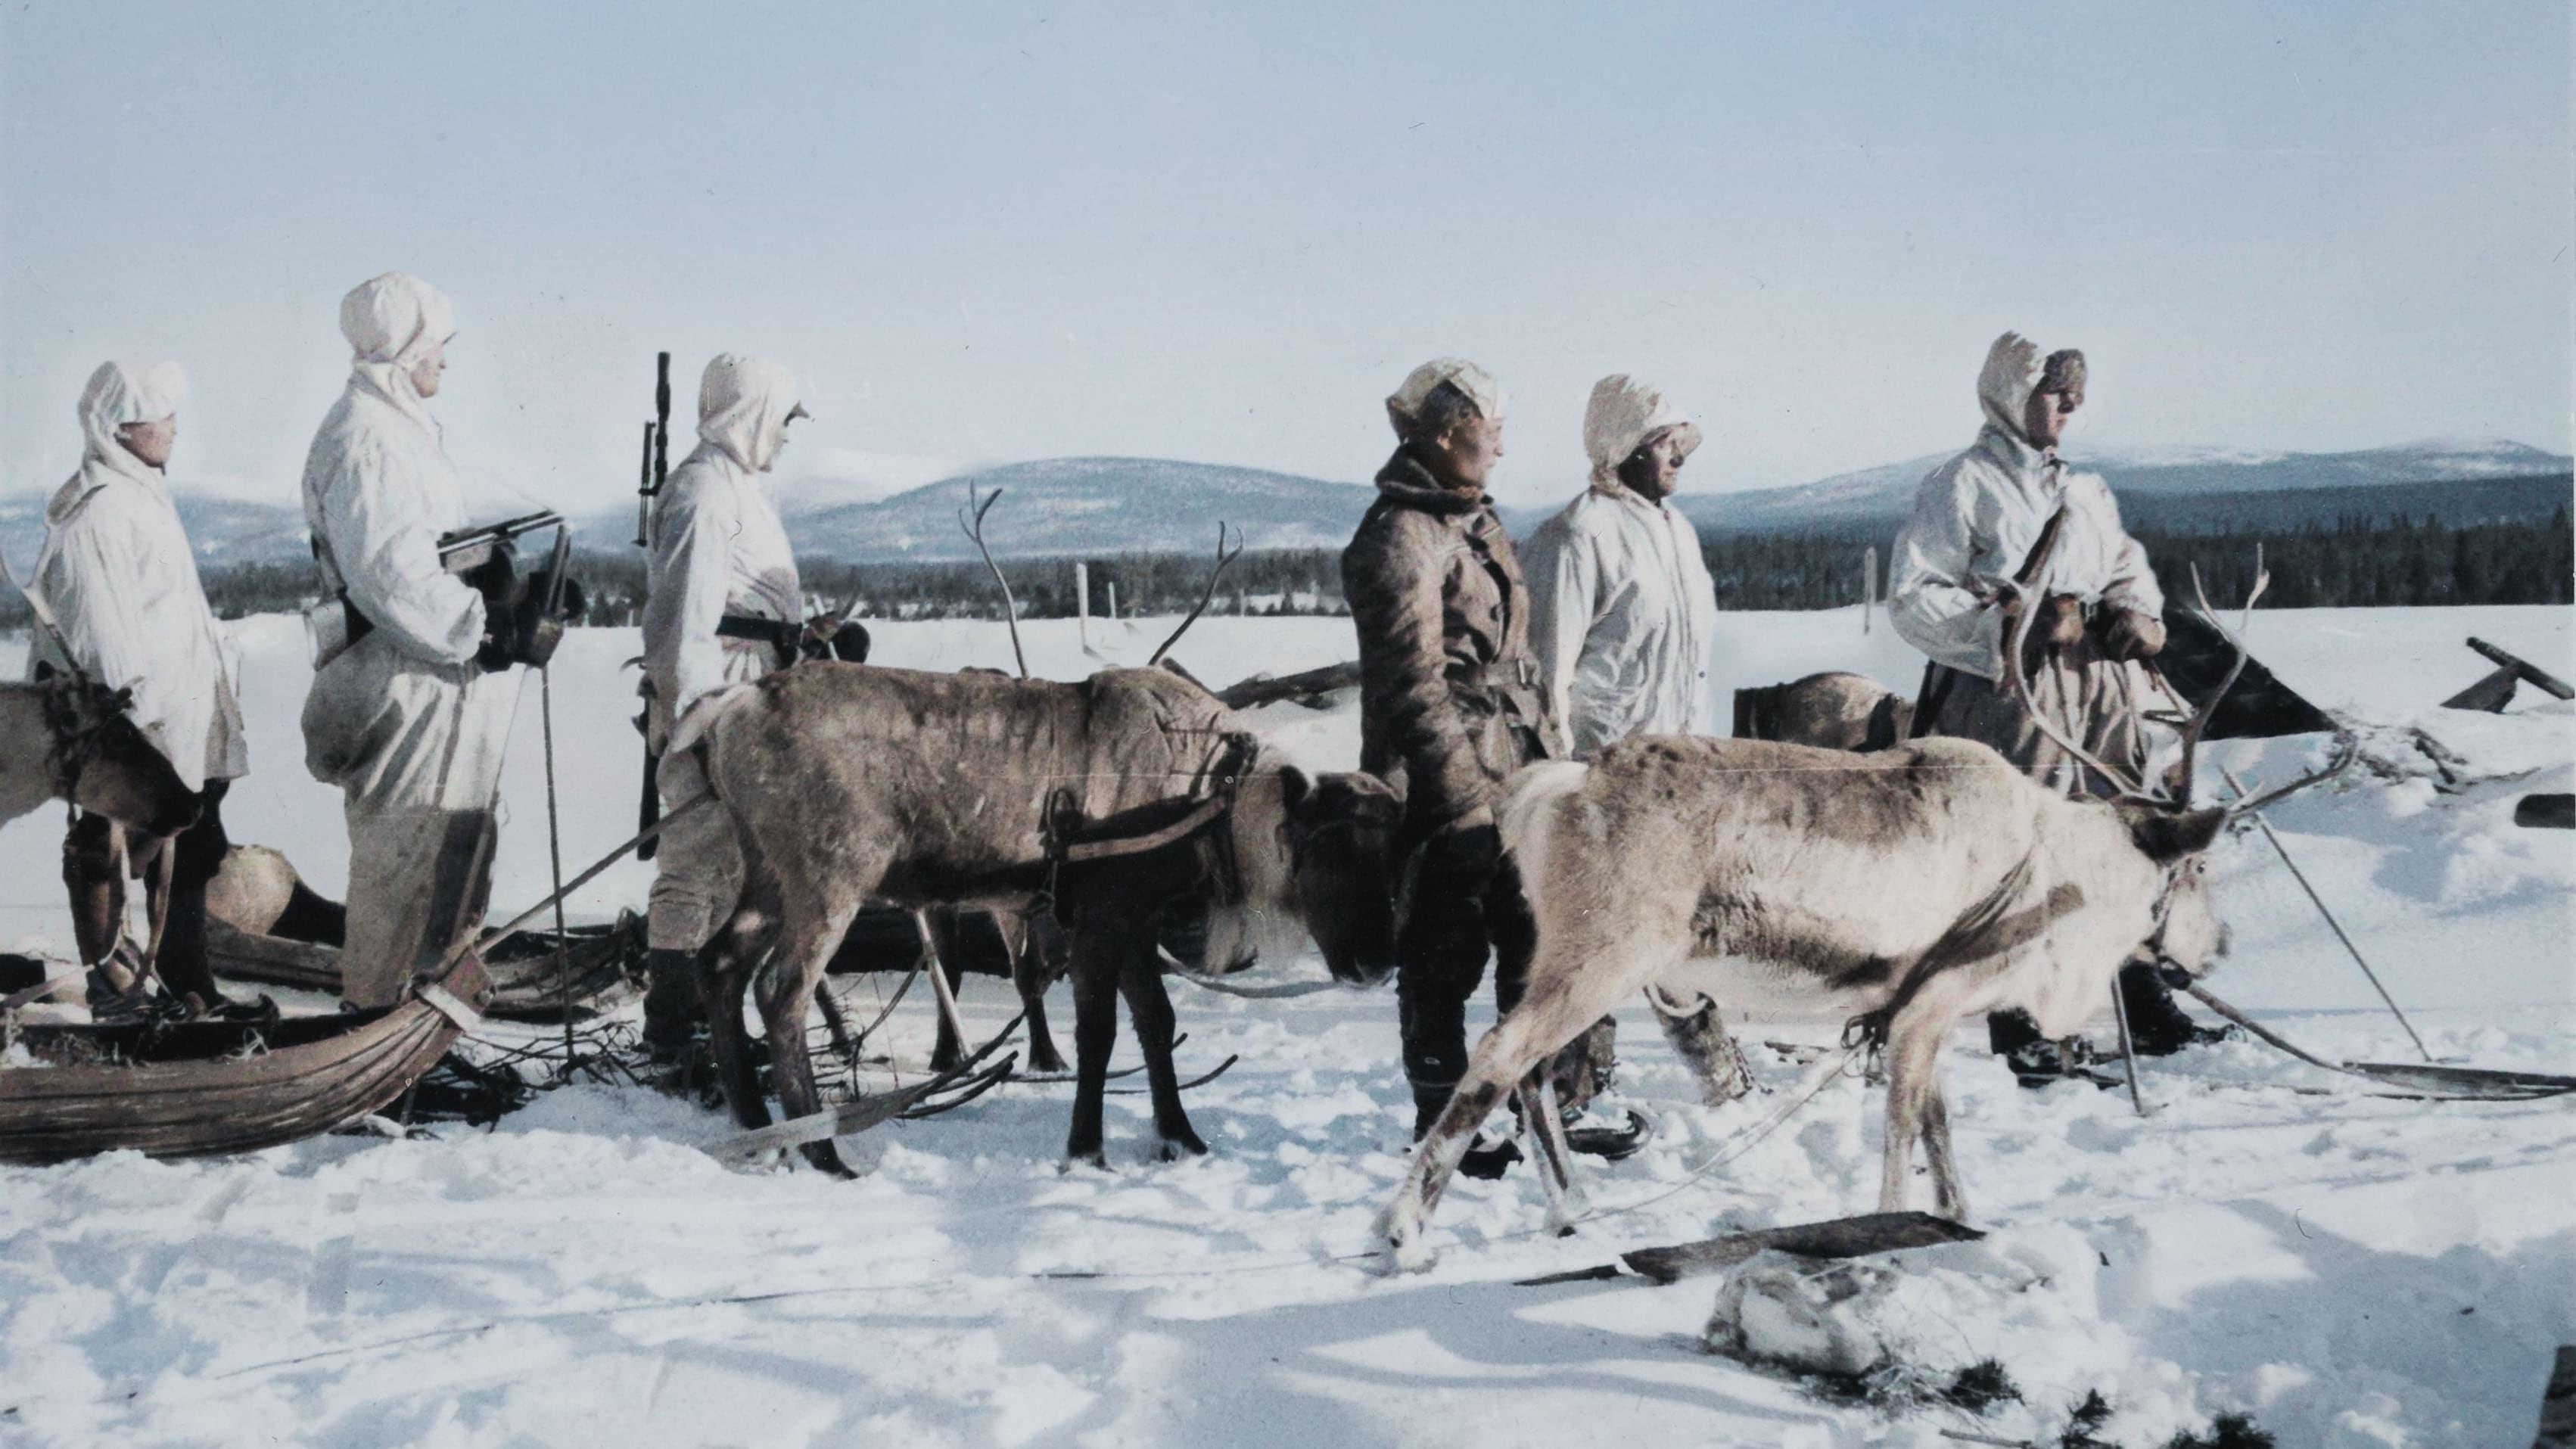 Untold Arctic Wars backdrop